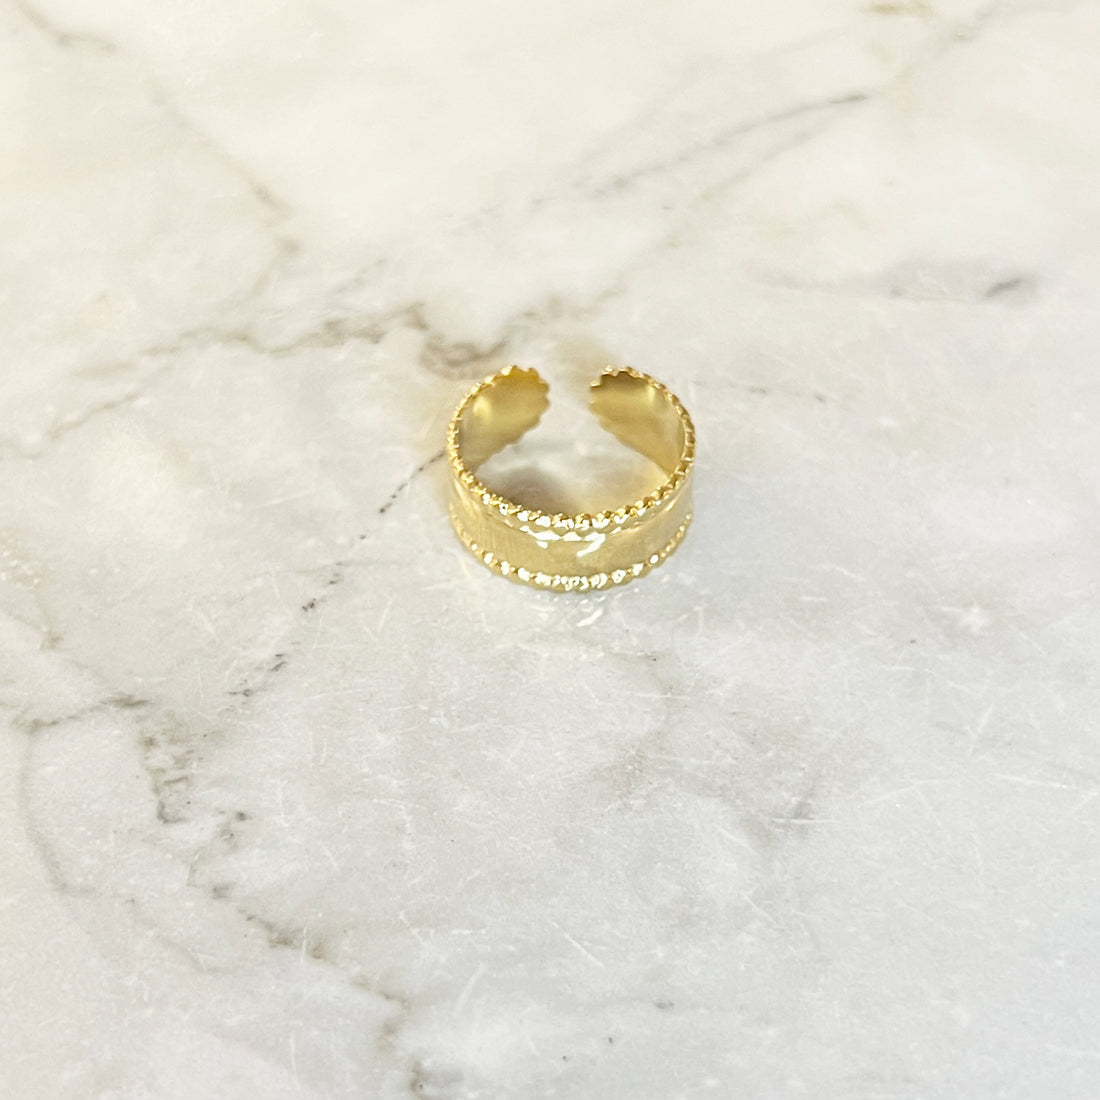 Gouden brede ring met gekartelde rand. De ring is van roestvrij staal met een gold plated laagje en is waterproof. De ring is one-size en verstelbaar.